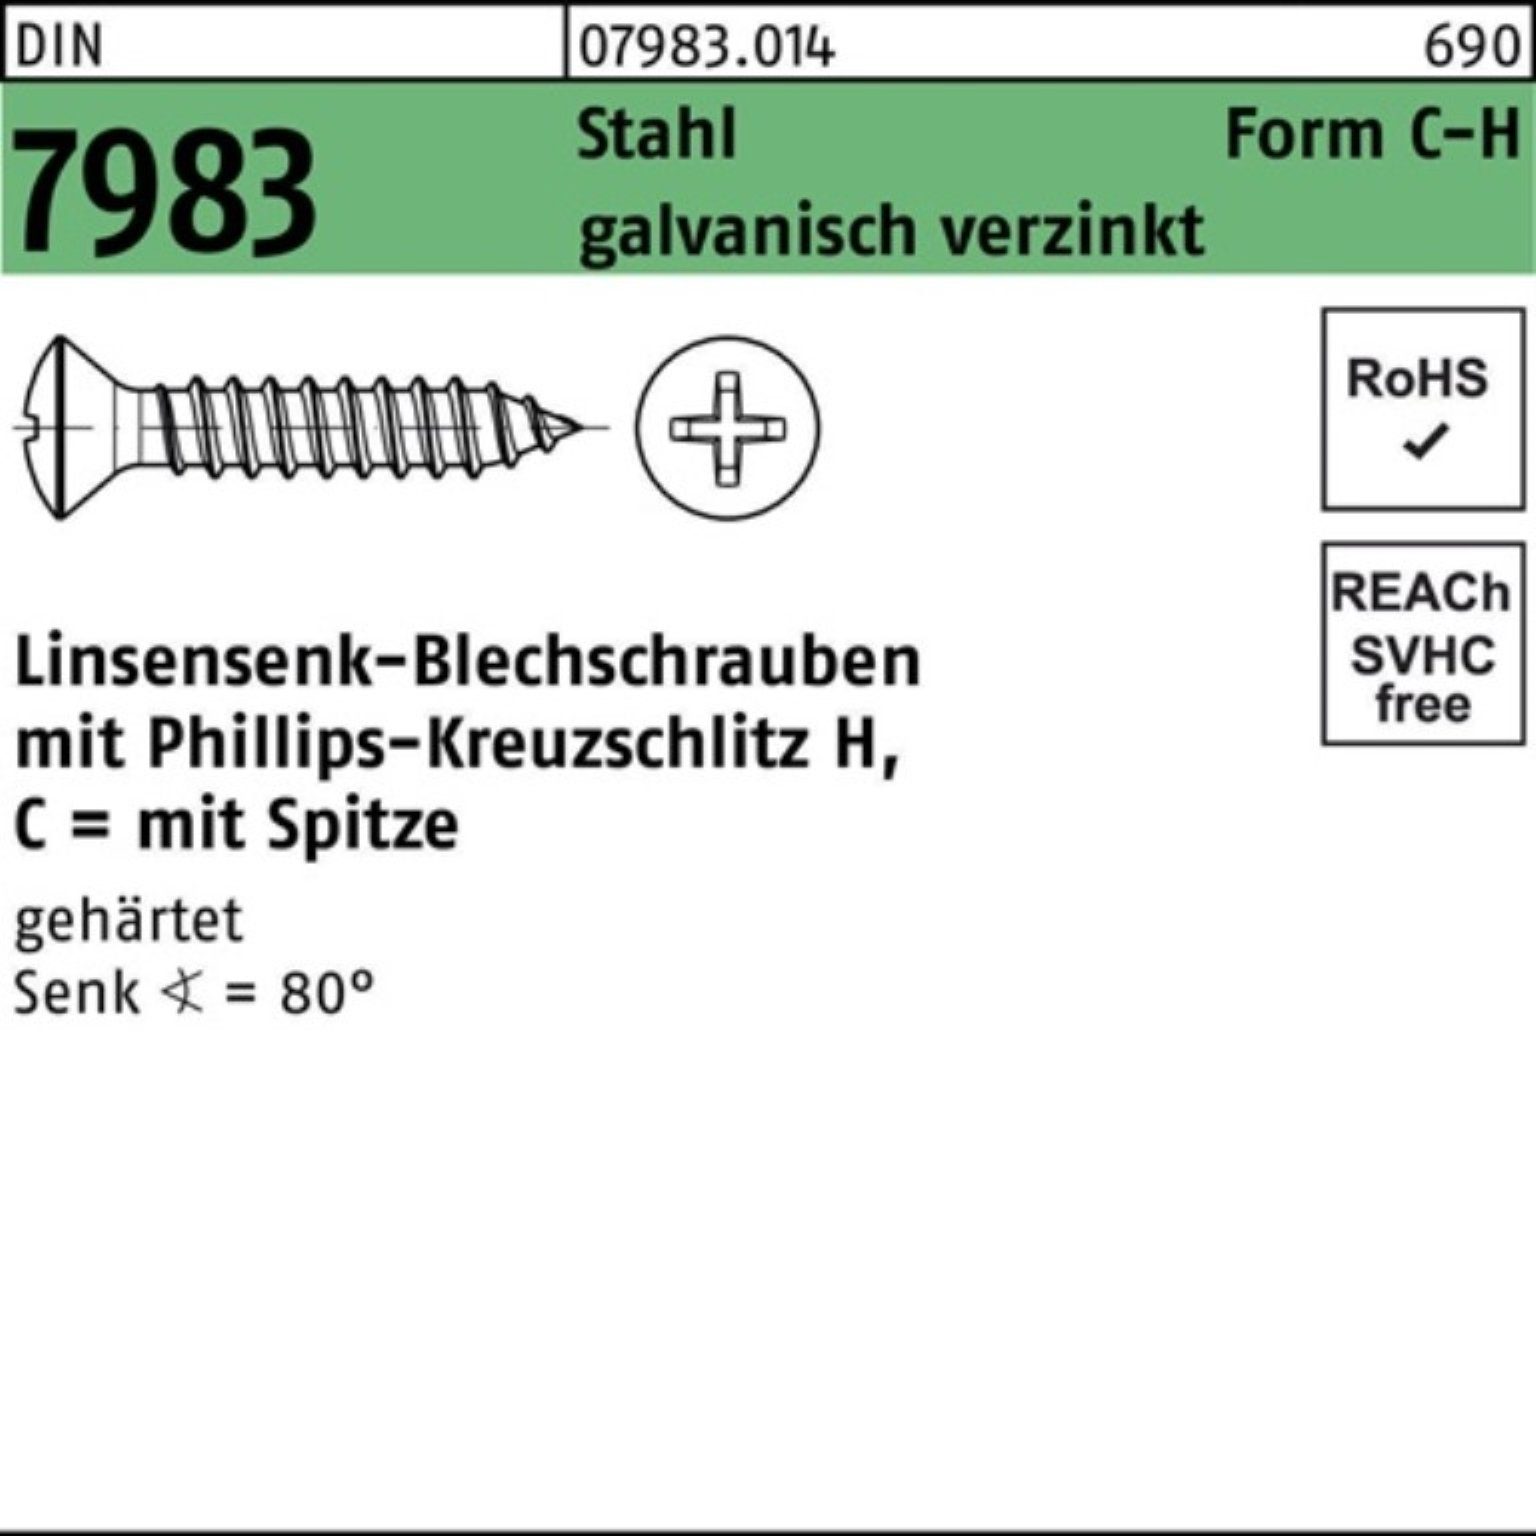 PH 6,3x32-H Stahl Linsensenkblechschraube C 7983 gehär DIN Pack Schraube Reyher 250er